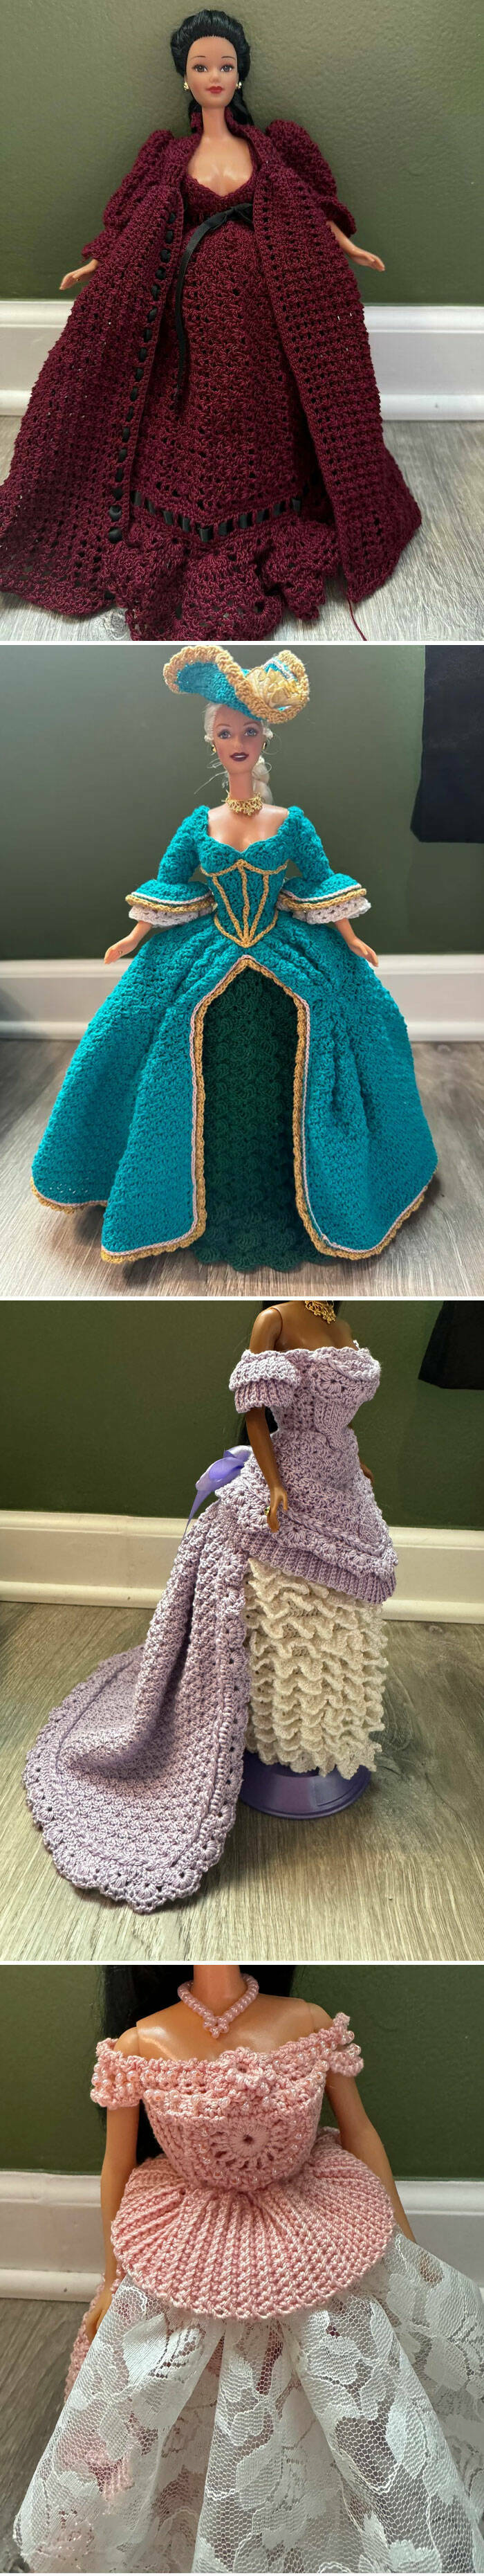 Incredible Crochet Creations That Amaze